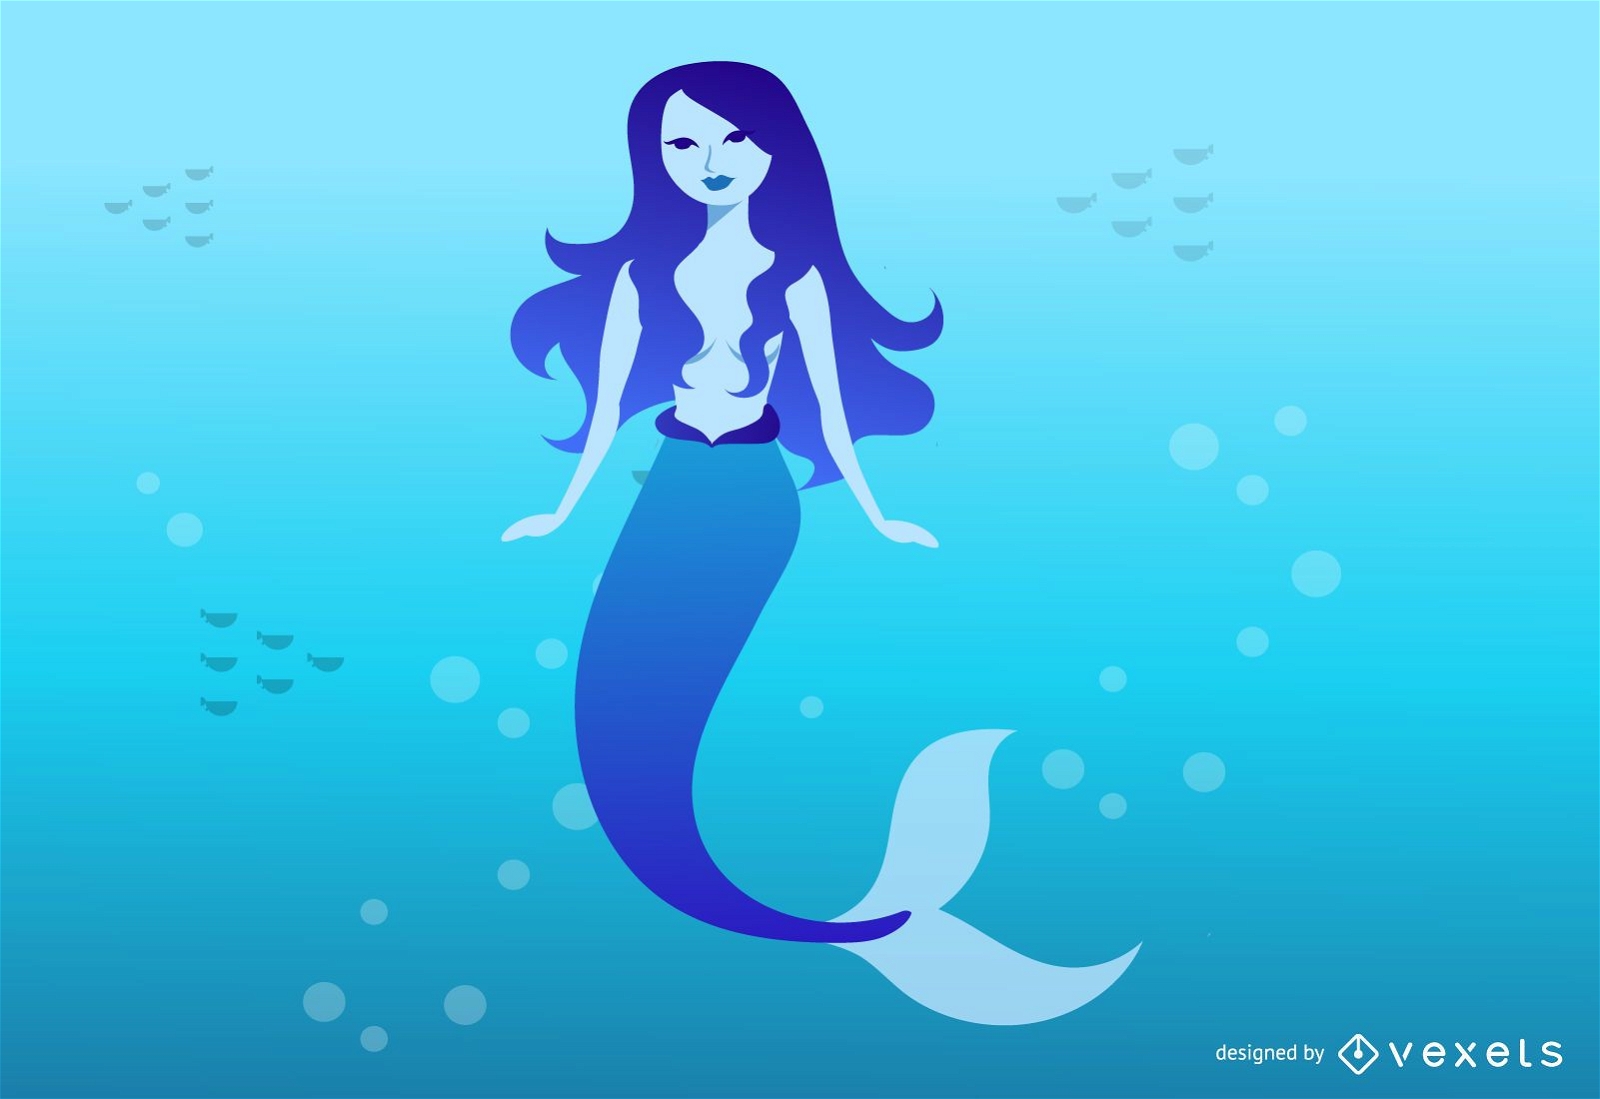 Mythical Blue Mermaid Illustration